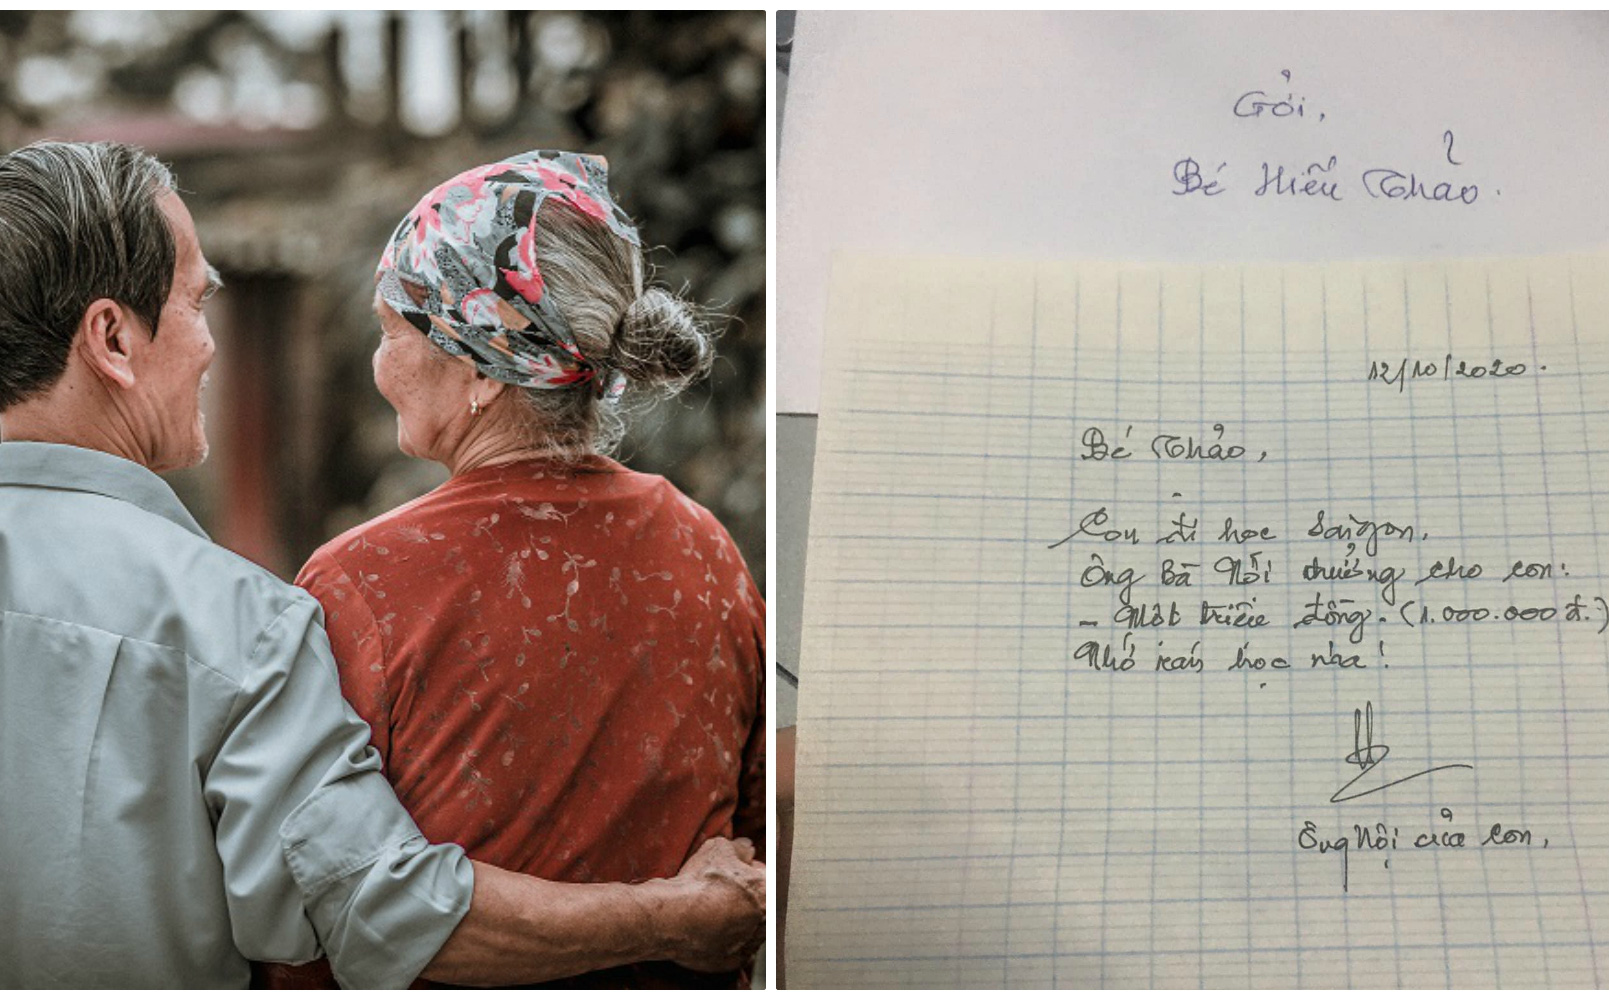 Ngày cháu gái lên Sài Gòn học, ông bà nội dúi vội bức thư dài 4 dòng, nội dung khiến tất cả &quot;cay mắt&quot;